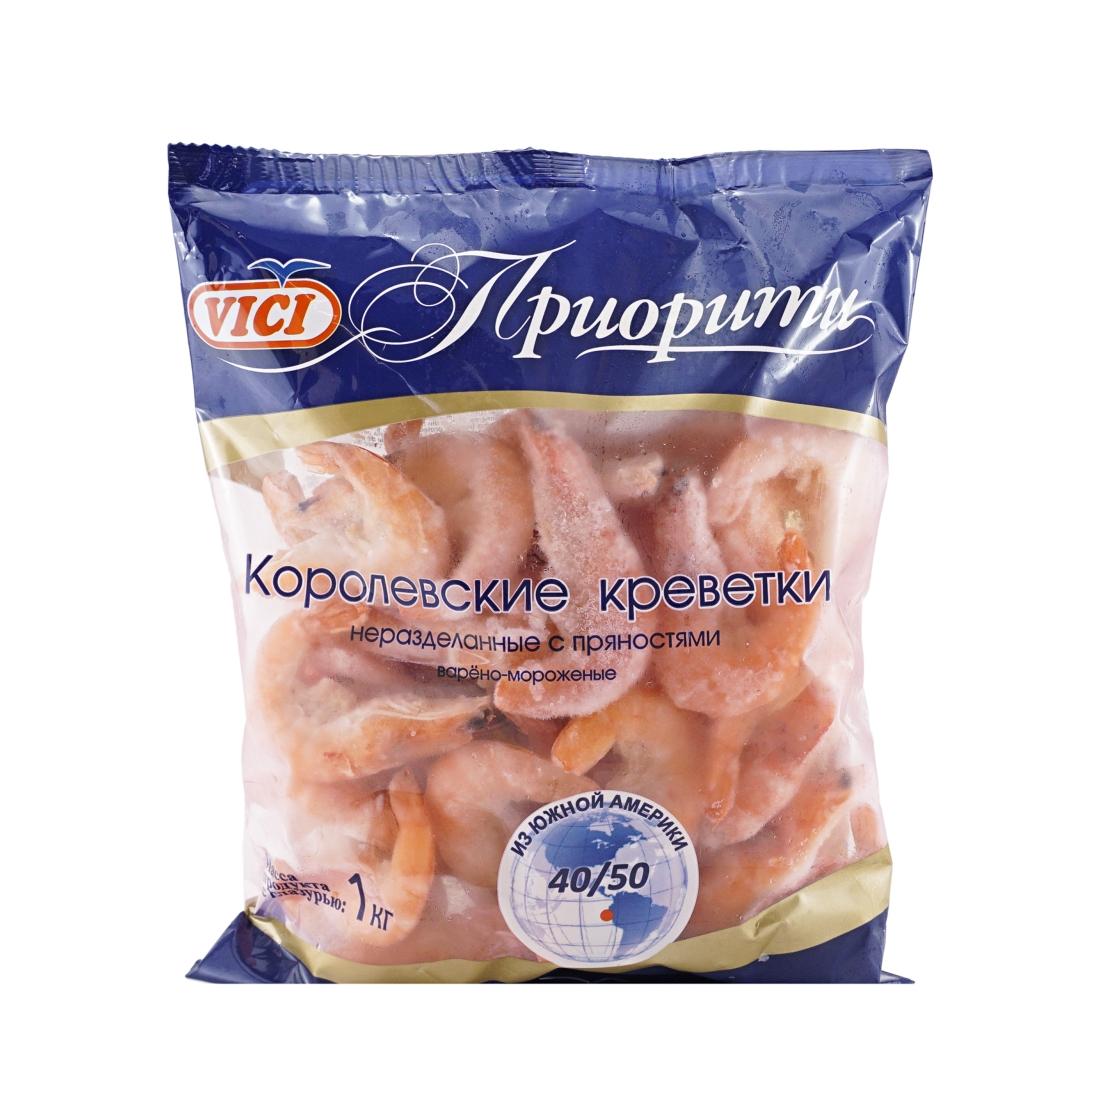 Креветки  40-50  корол в м  Vici  1000г - интернет-магазин Близнецы